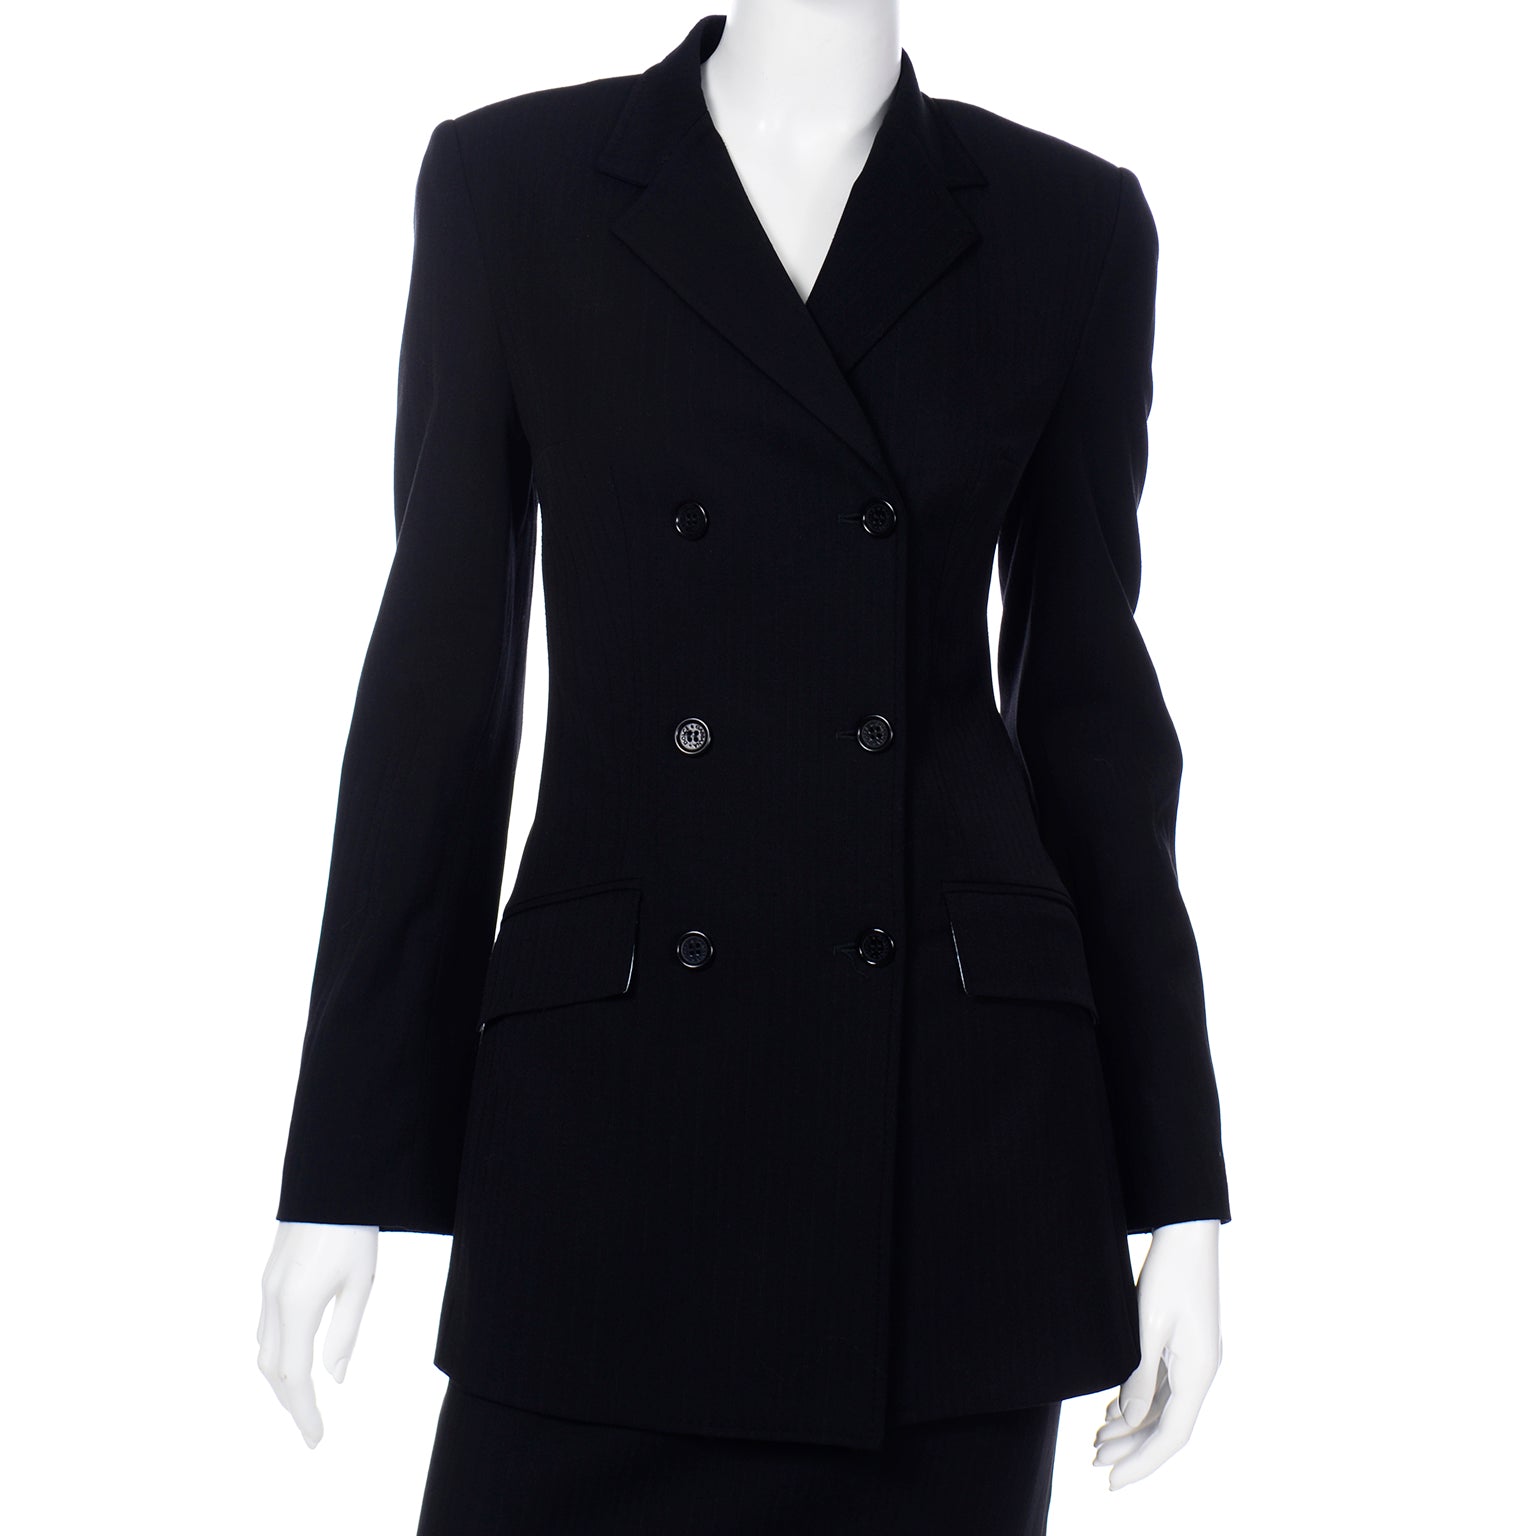 Vintage Dolce & Gabbana Black Pinstripe Jacket & Skirt Suit – Modig